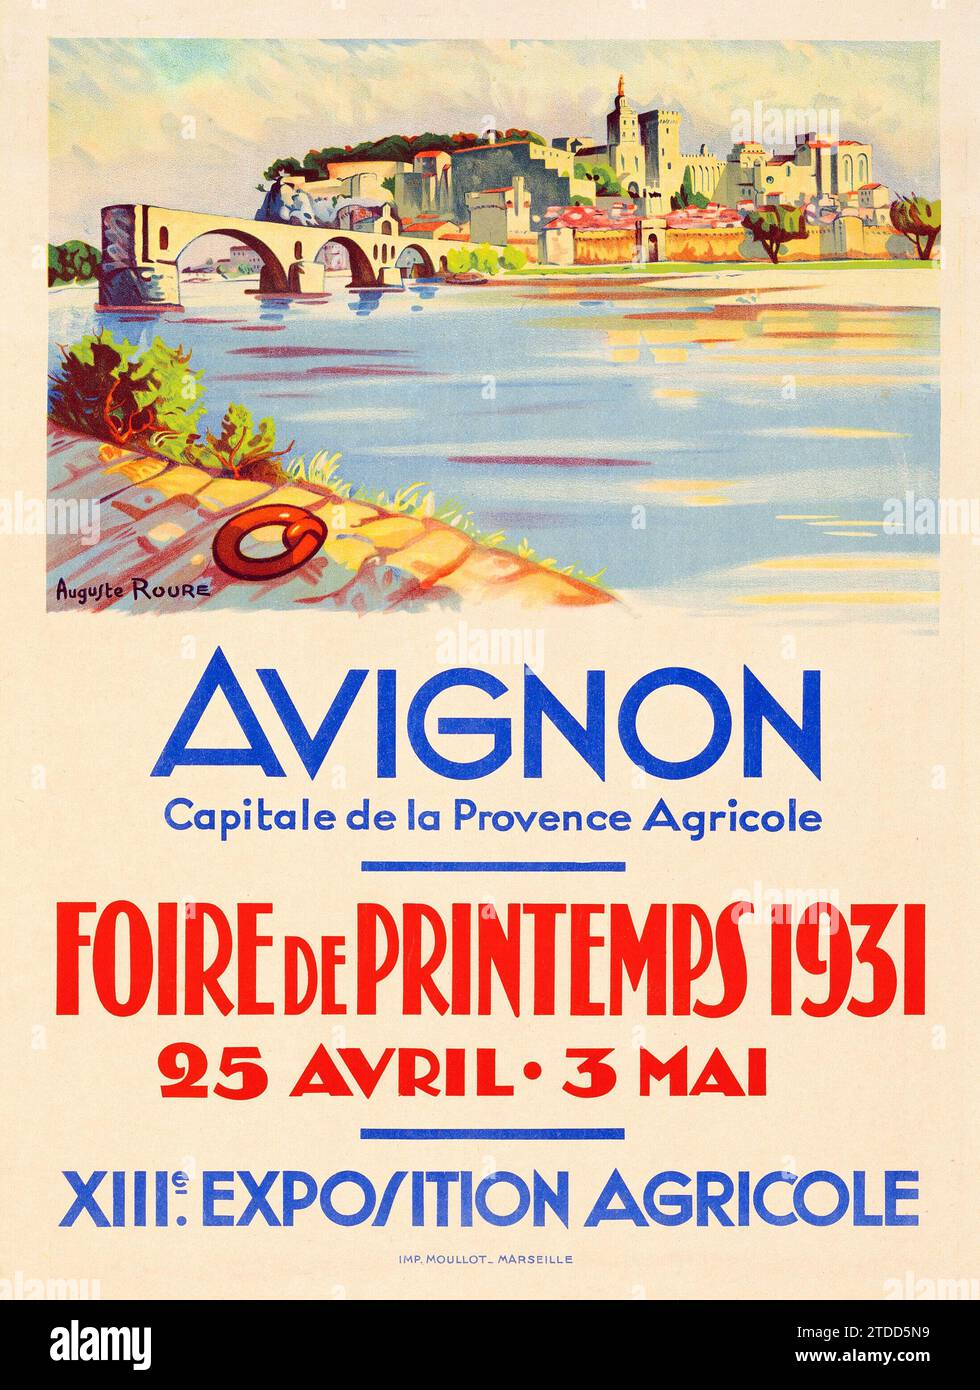 Affiche vintage - Foire de Printemps Avignon (1931). French moyenne - Auguste Roure Artwork Banque D'Images